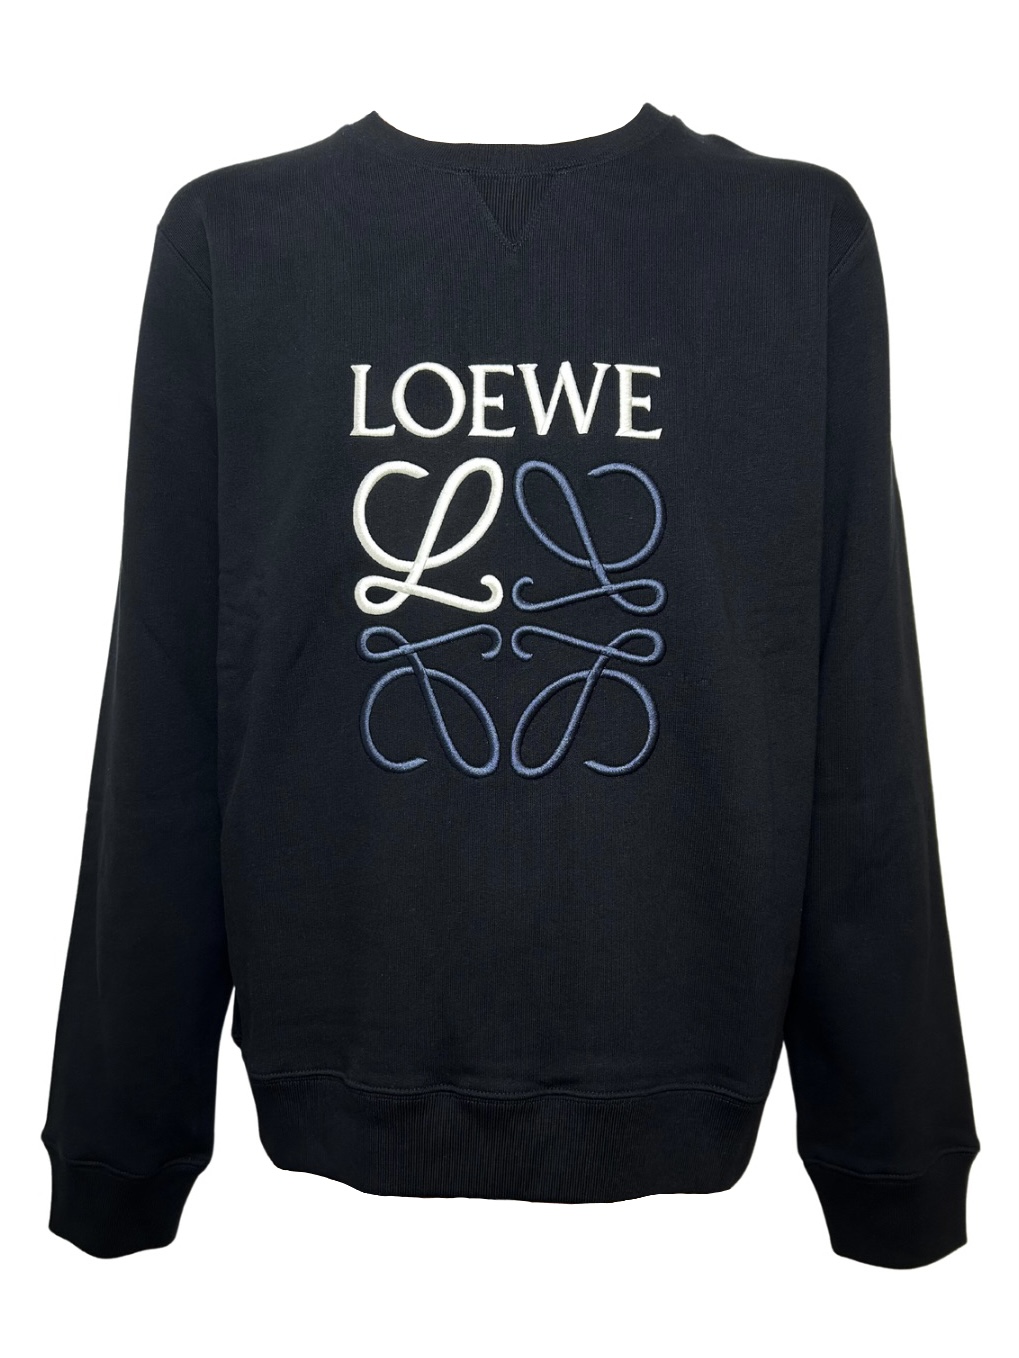 【LOEWE】Anagram Sweatsshirt